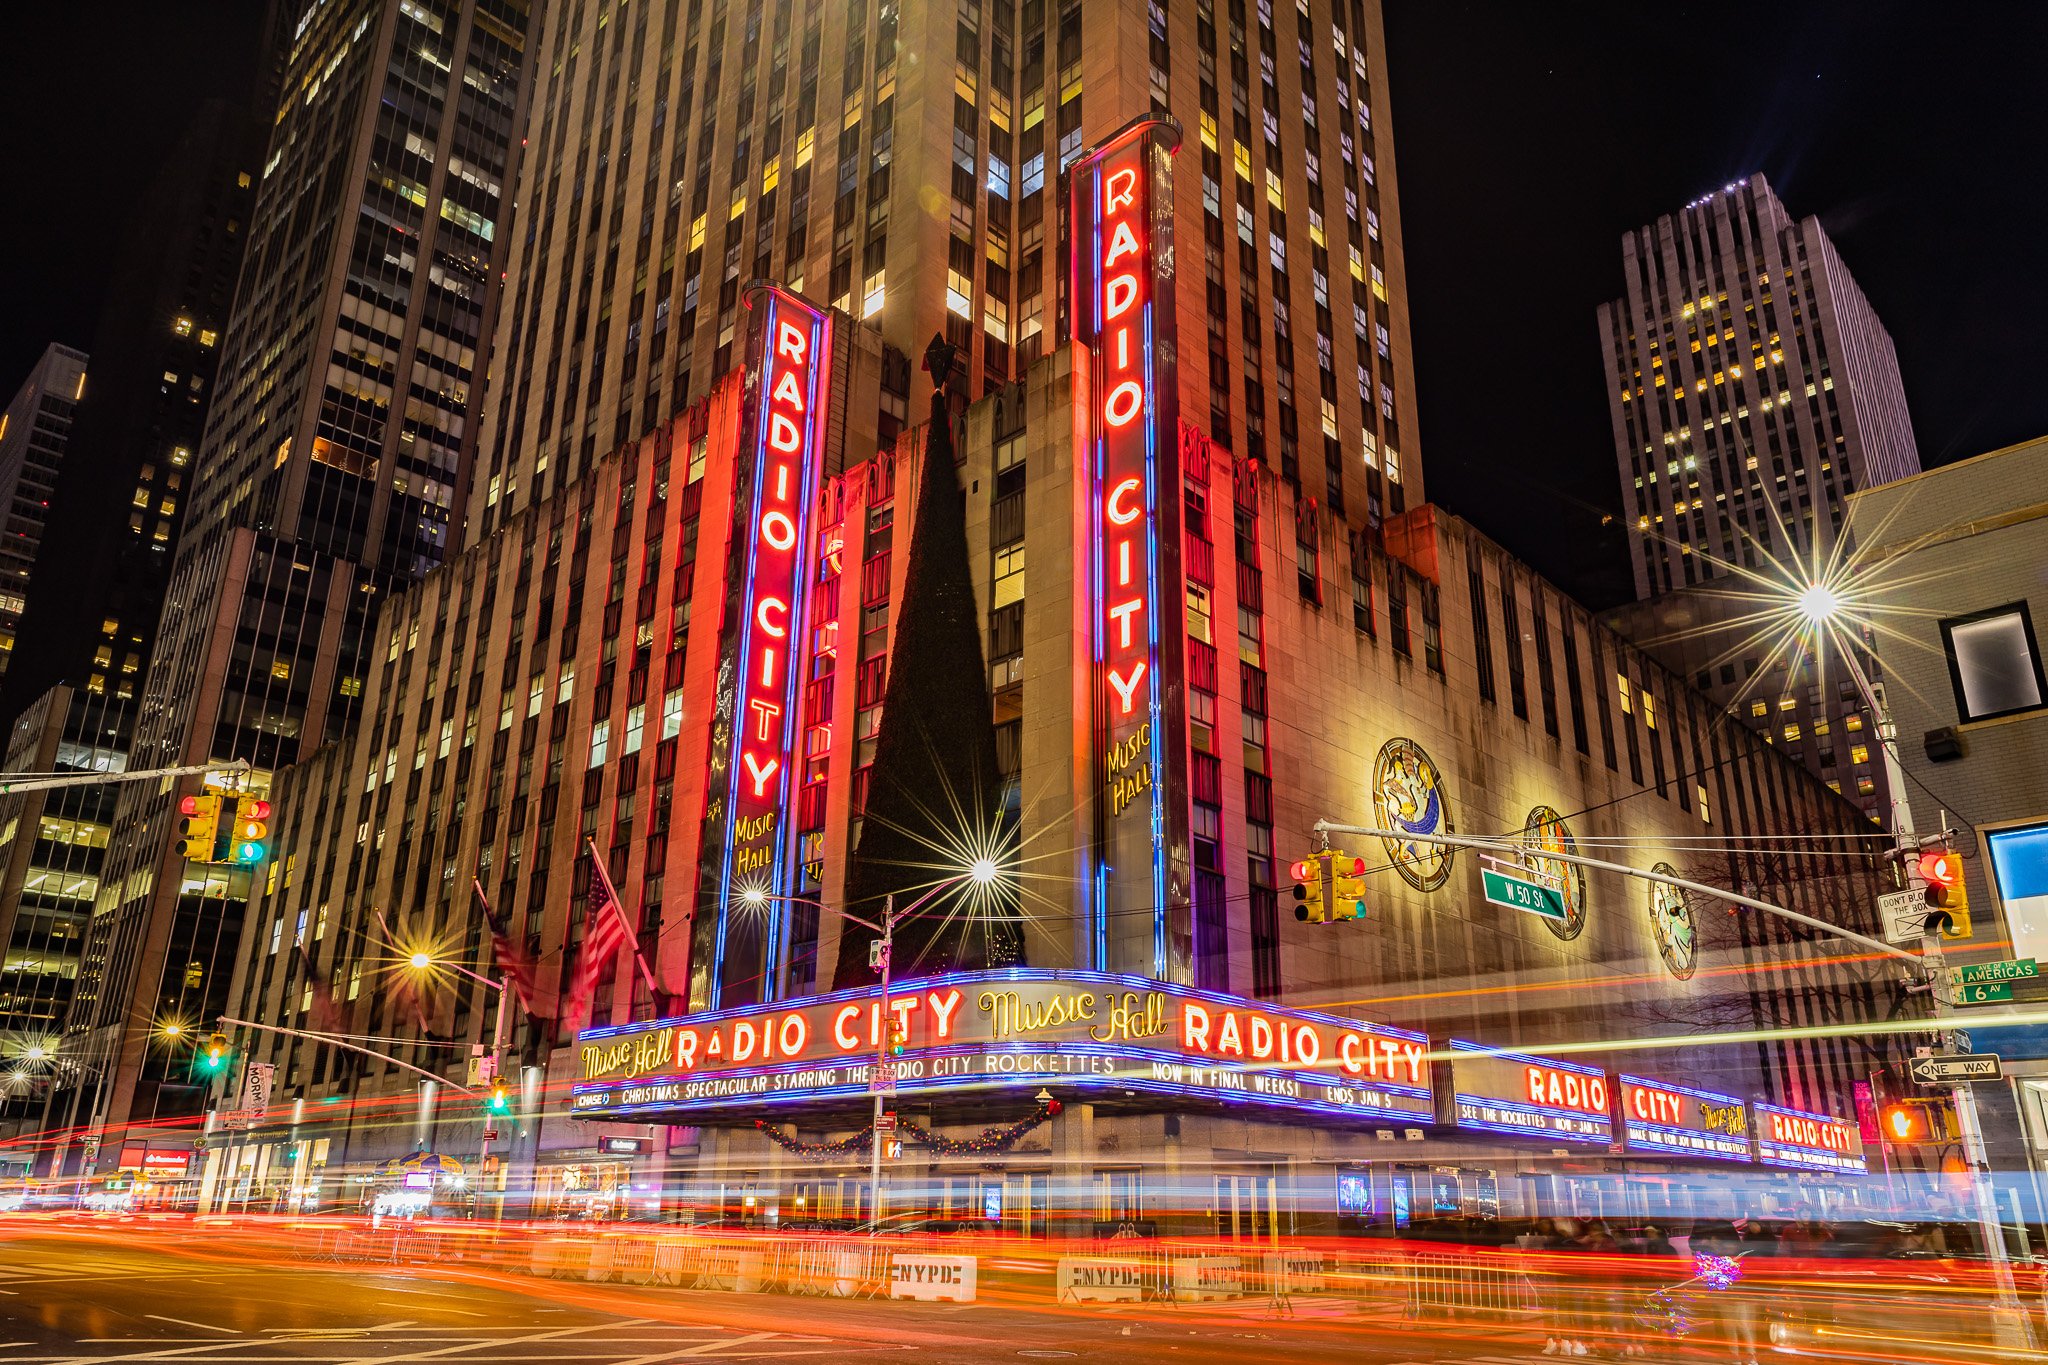 Cityscapes-NY-New York-Radio City Music Hall-New York (191225) 0006.jpg